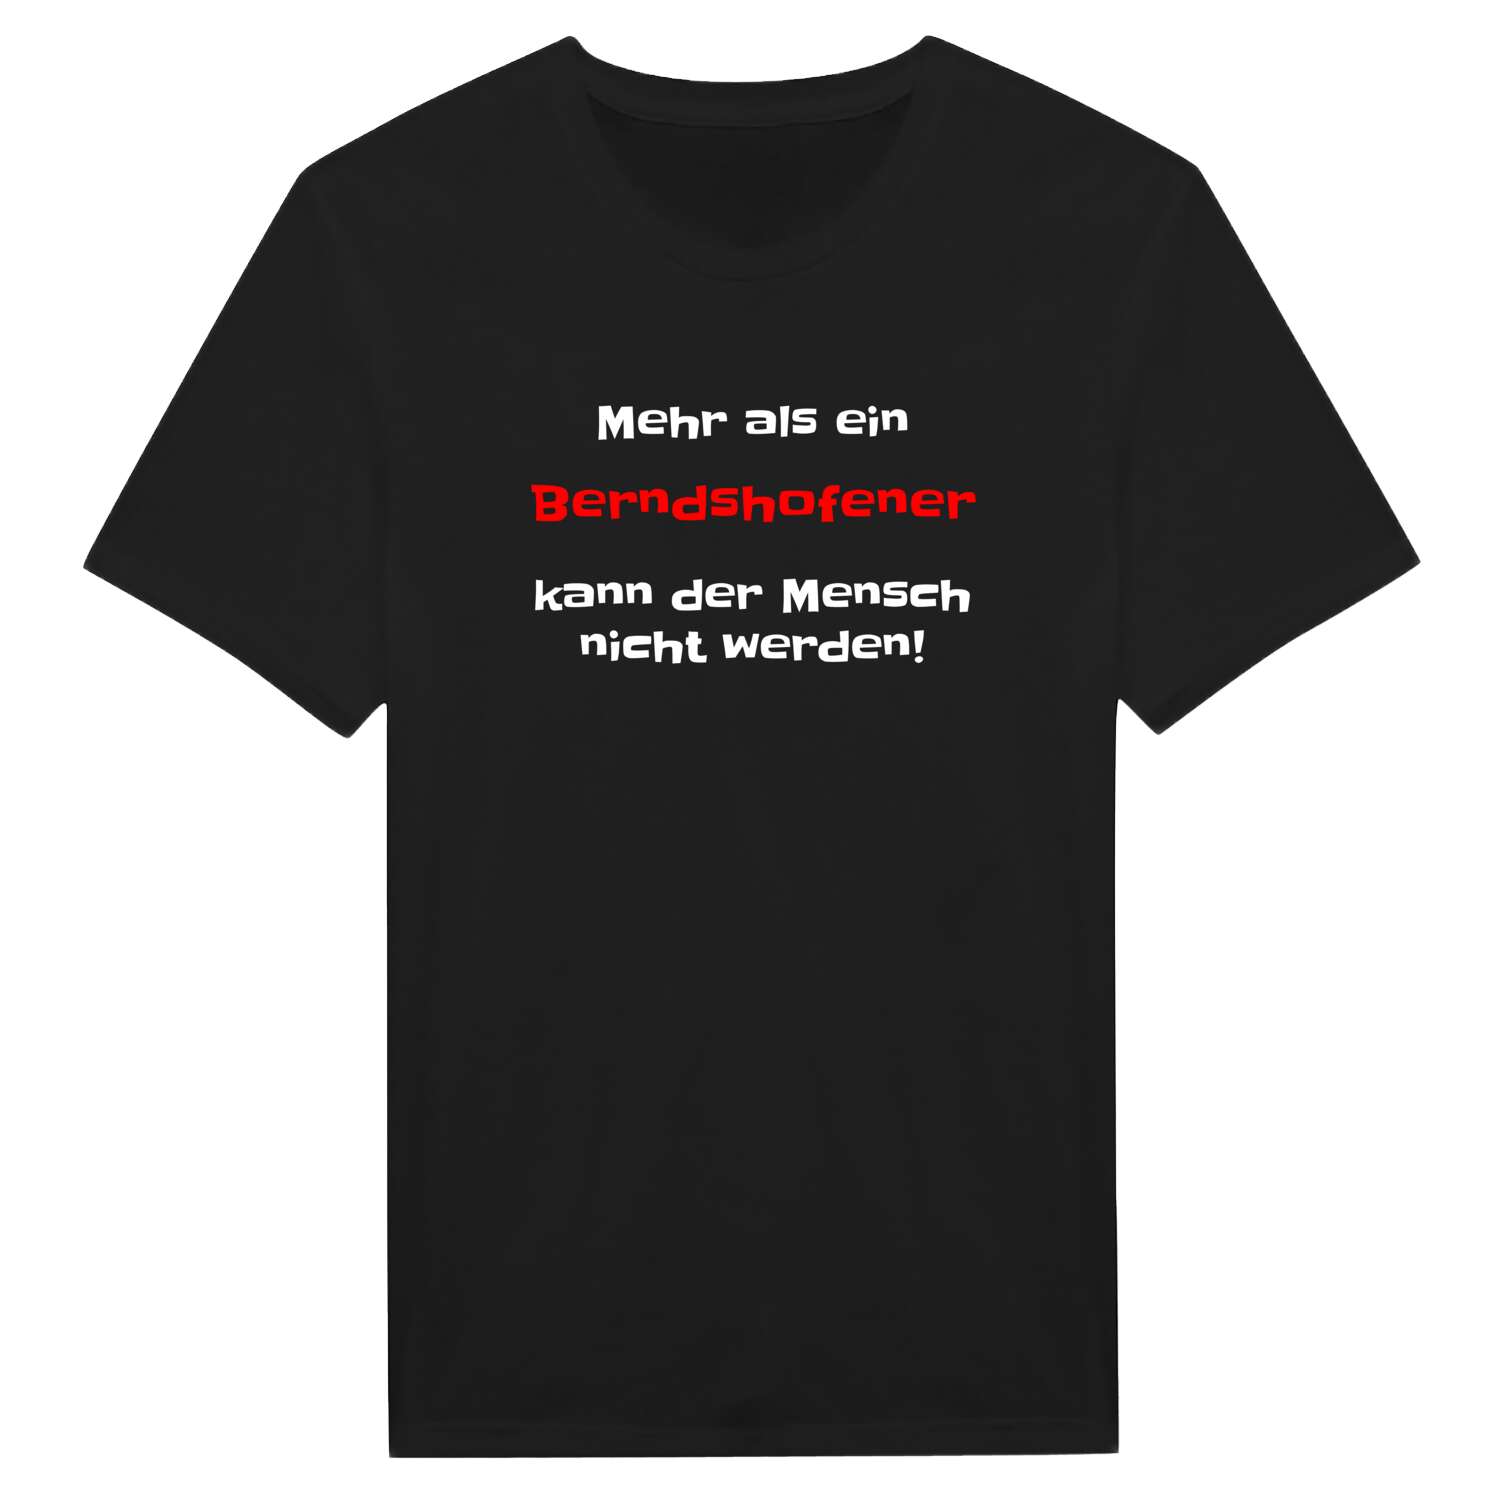 Berndshofen T-Shirt »Mehr als ein«